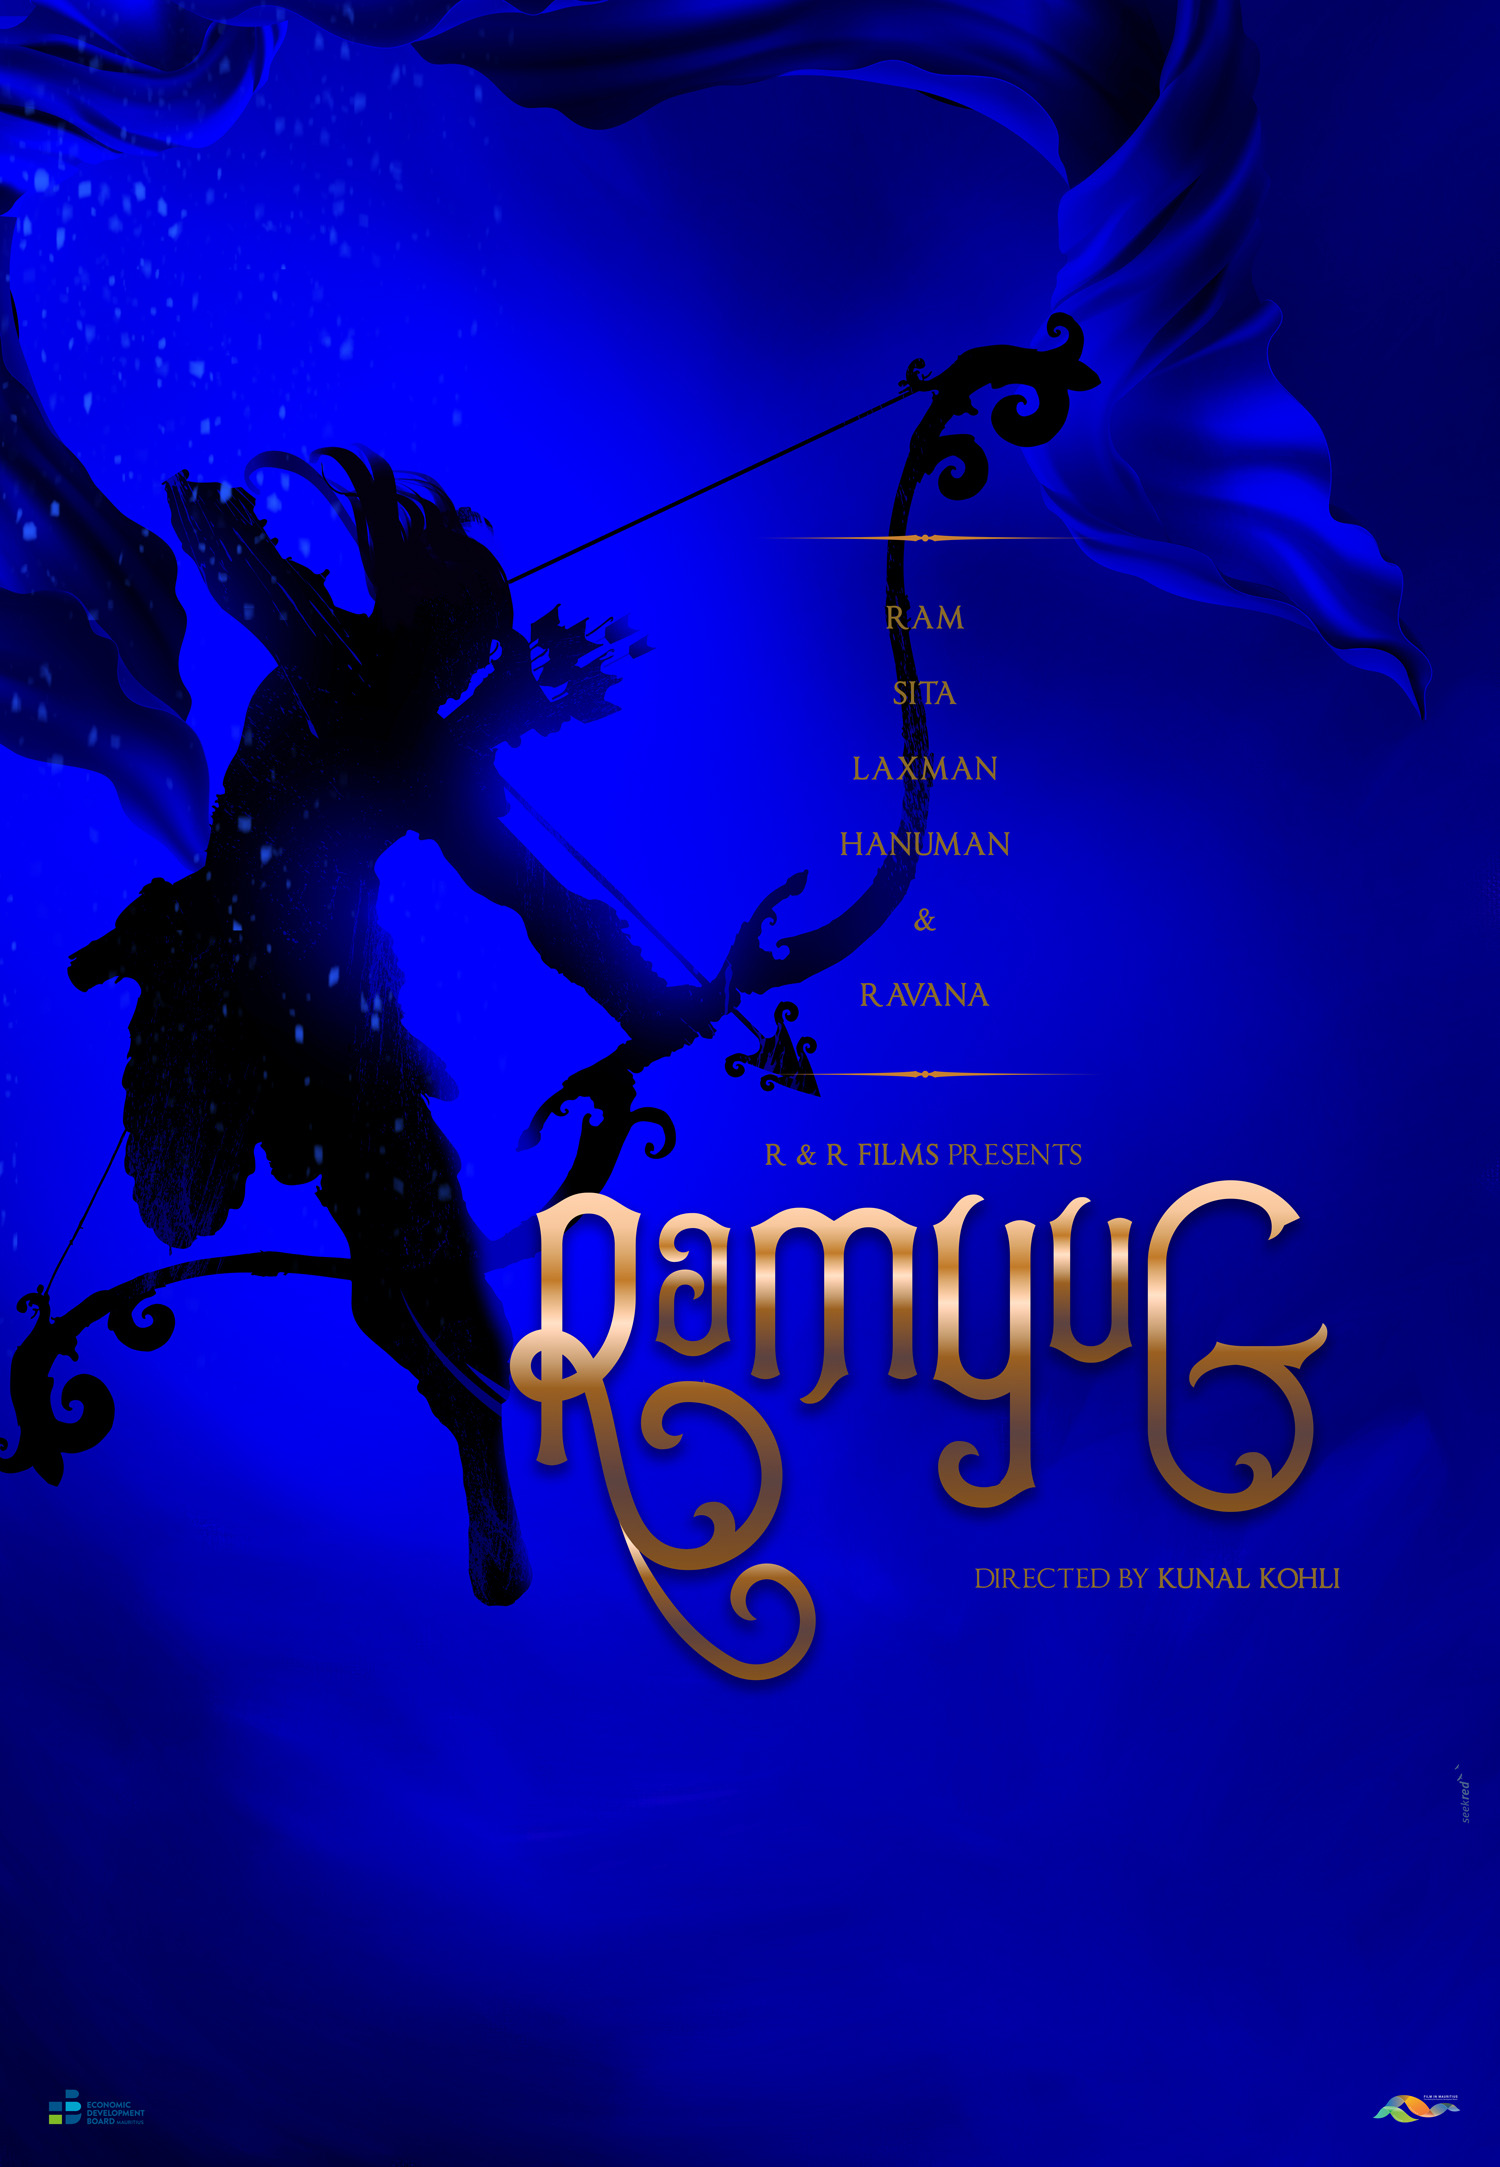 Mega Sized Movie Poster Image for Ramyug 